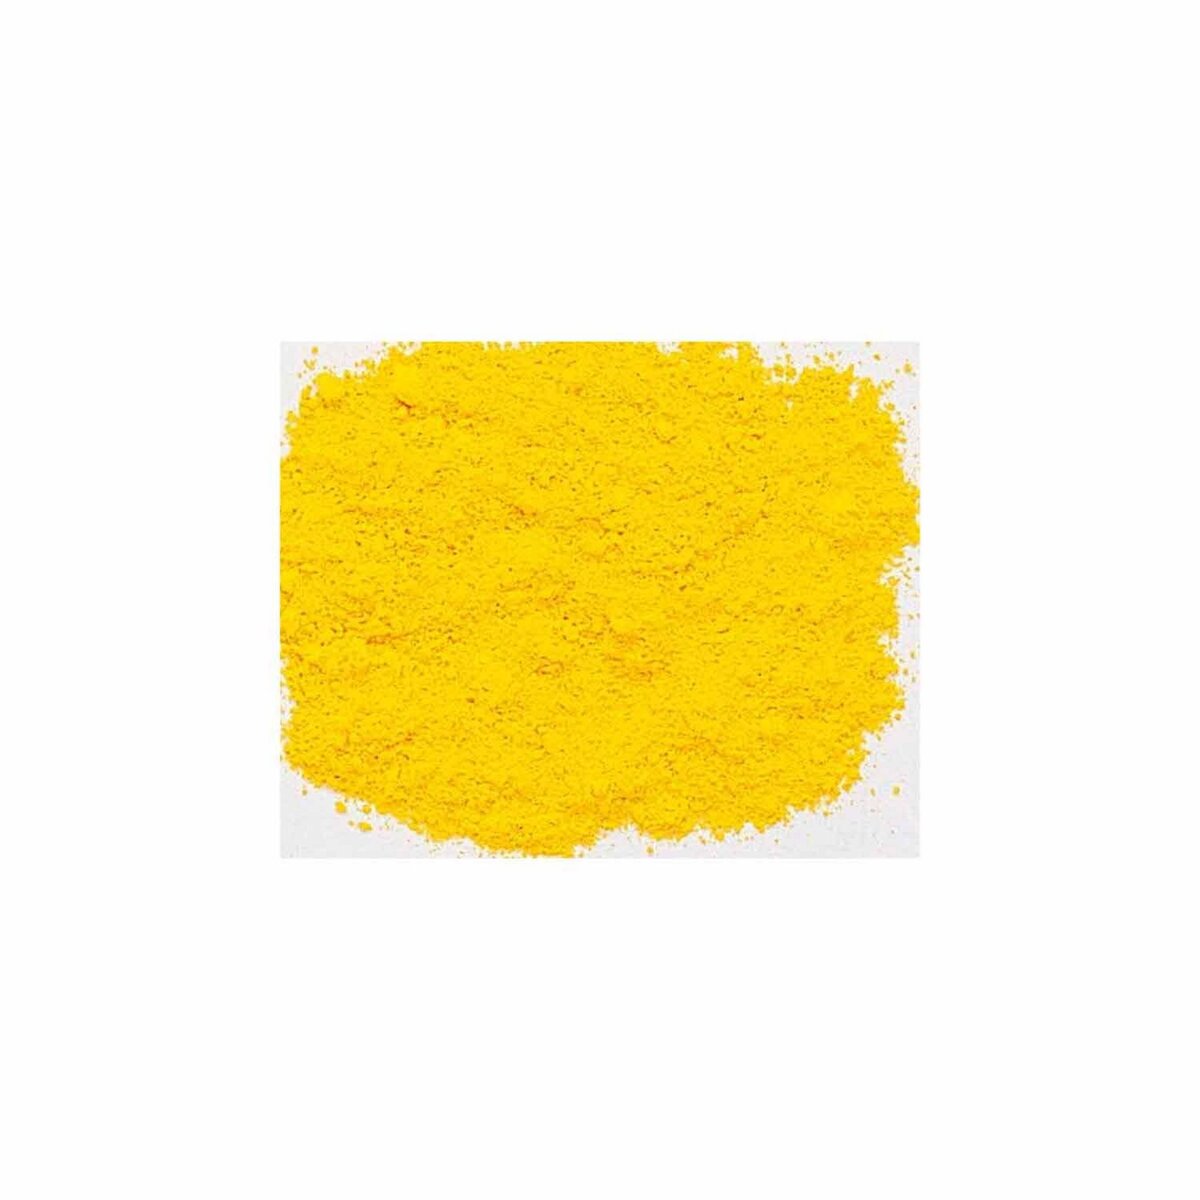  Pigment pour création de peinture - pot 100 g - Jaune de cadmium foncé substitut